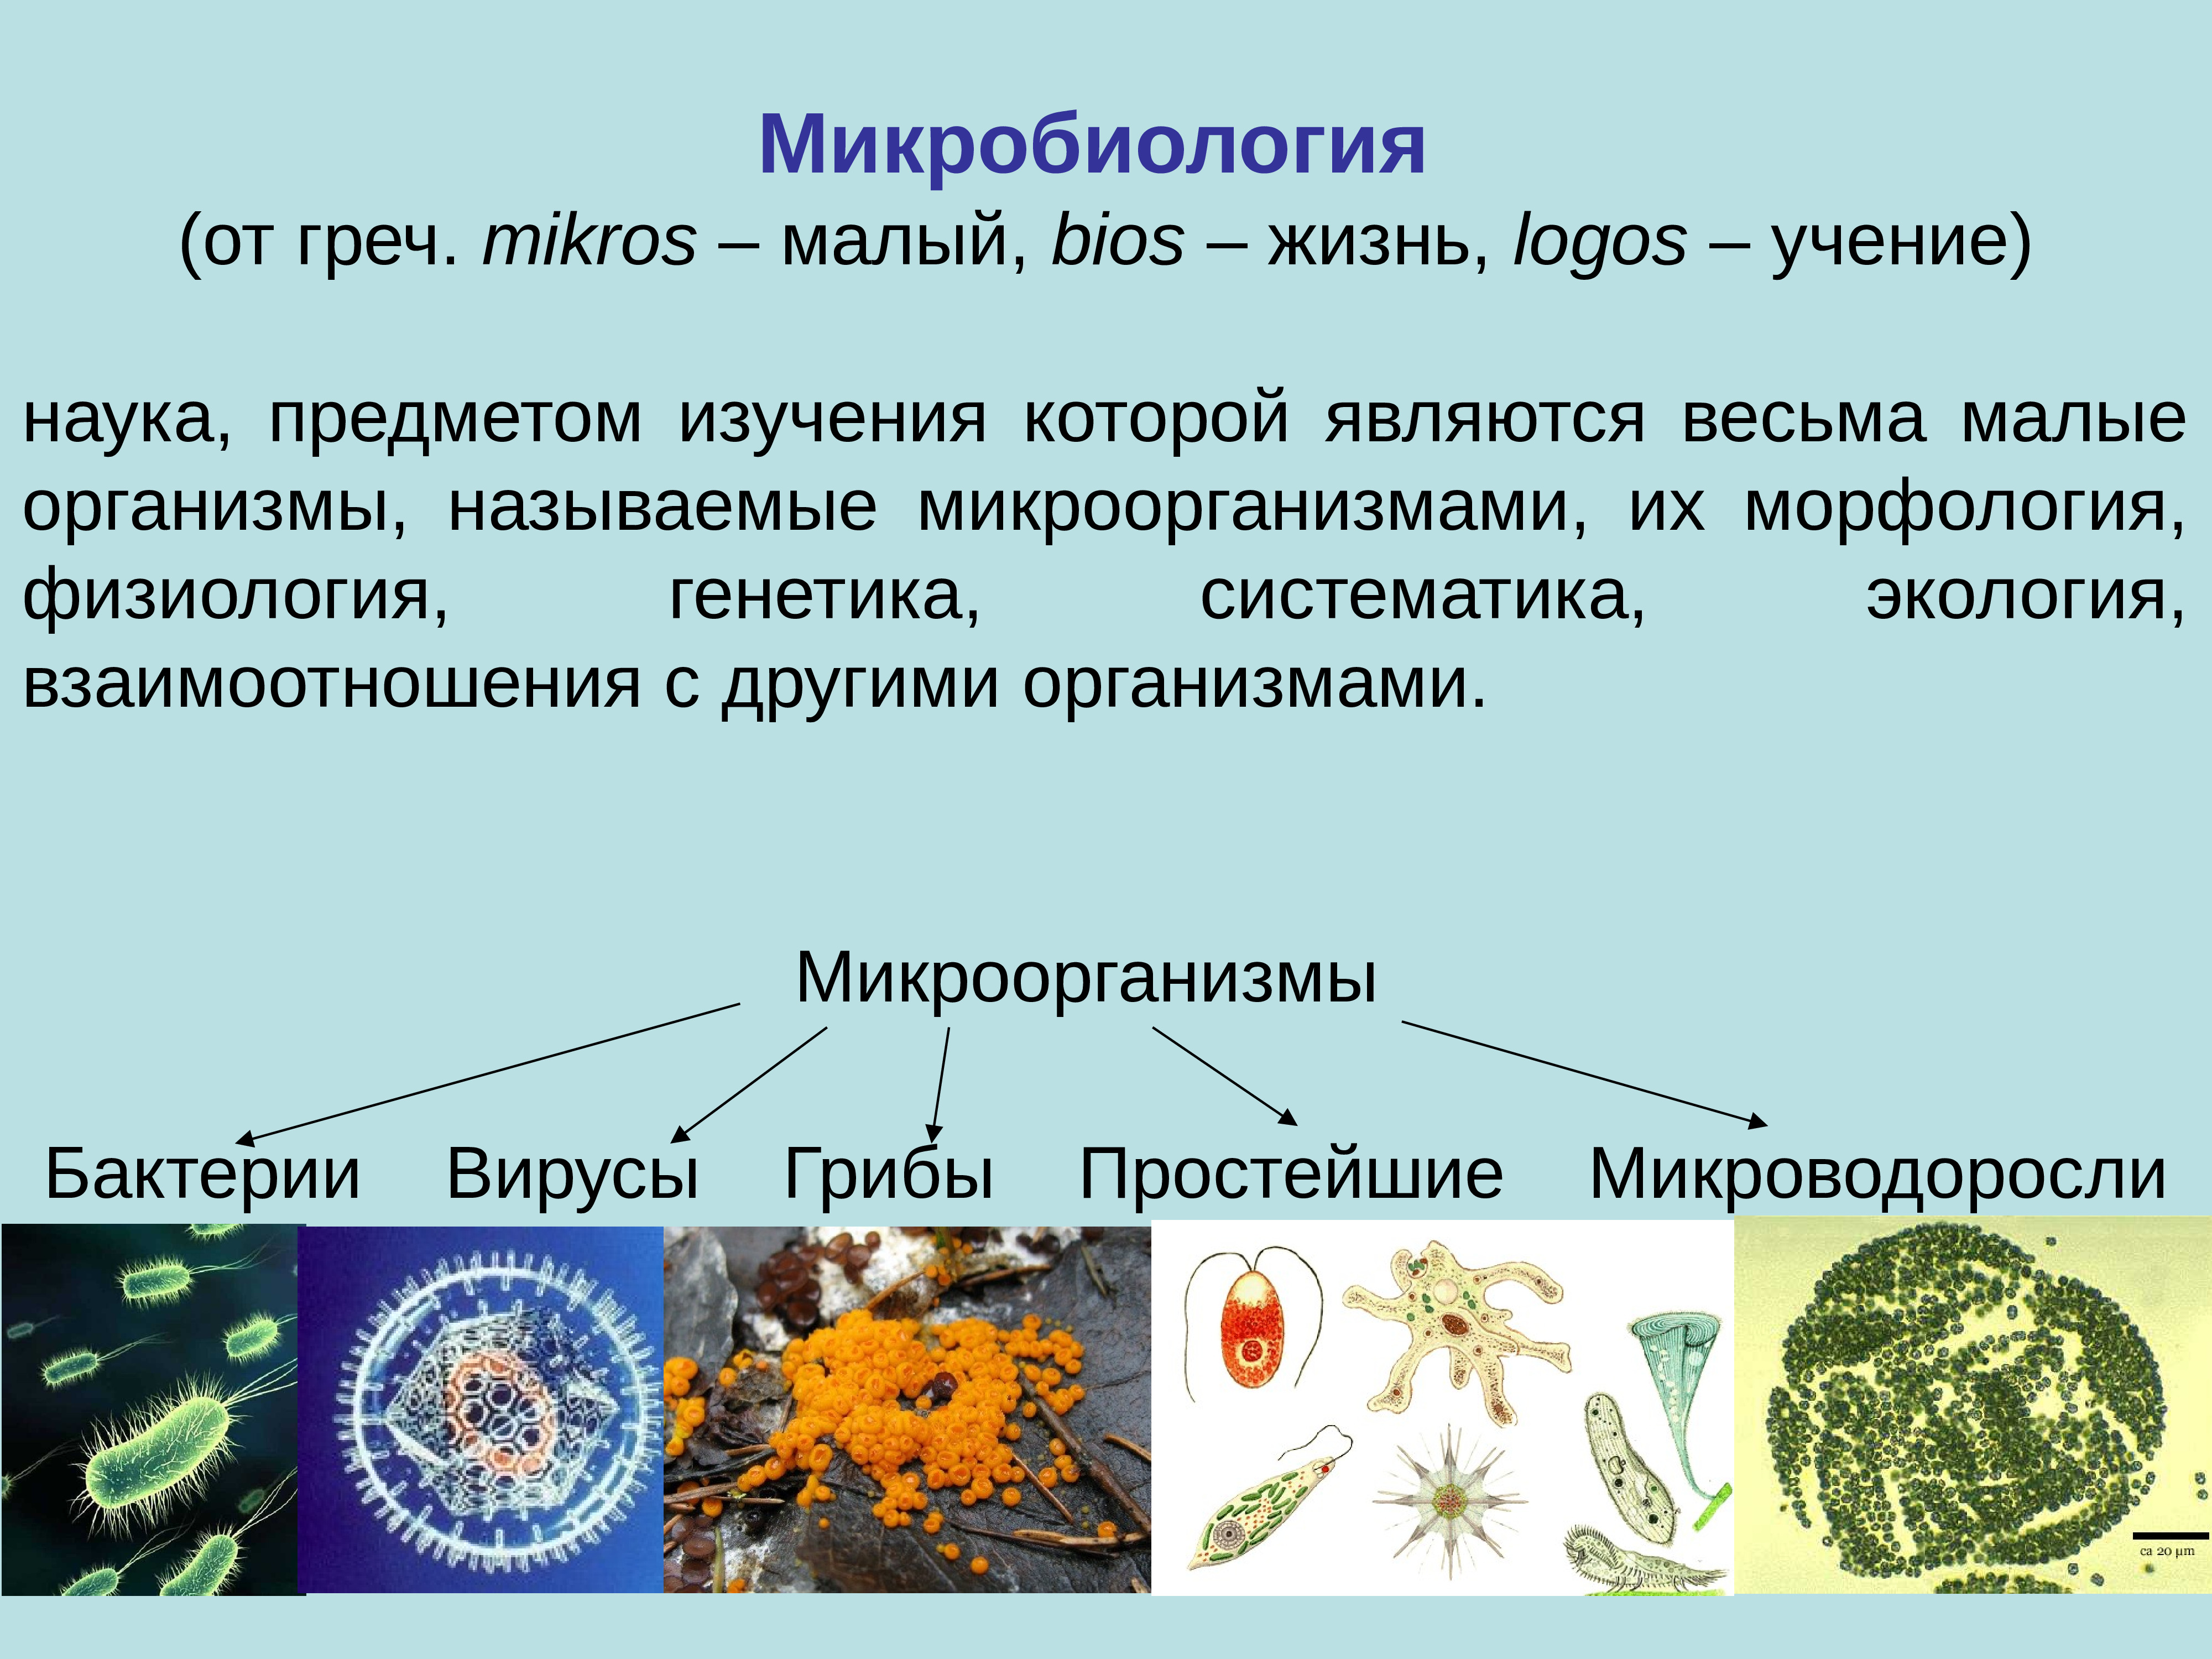 Как называют специалиста биолога объектом изучения которого являются изображенные на фотографии гриб